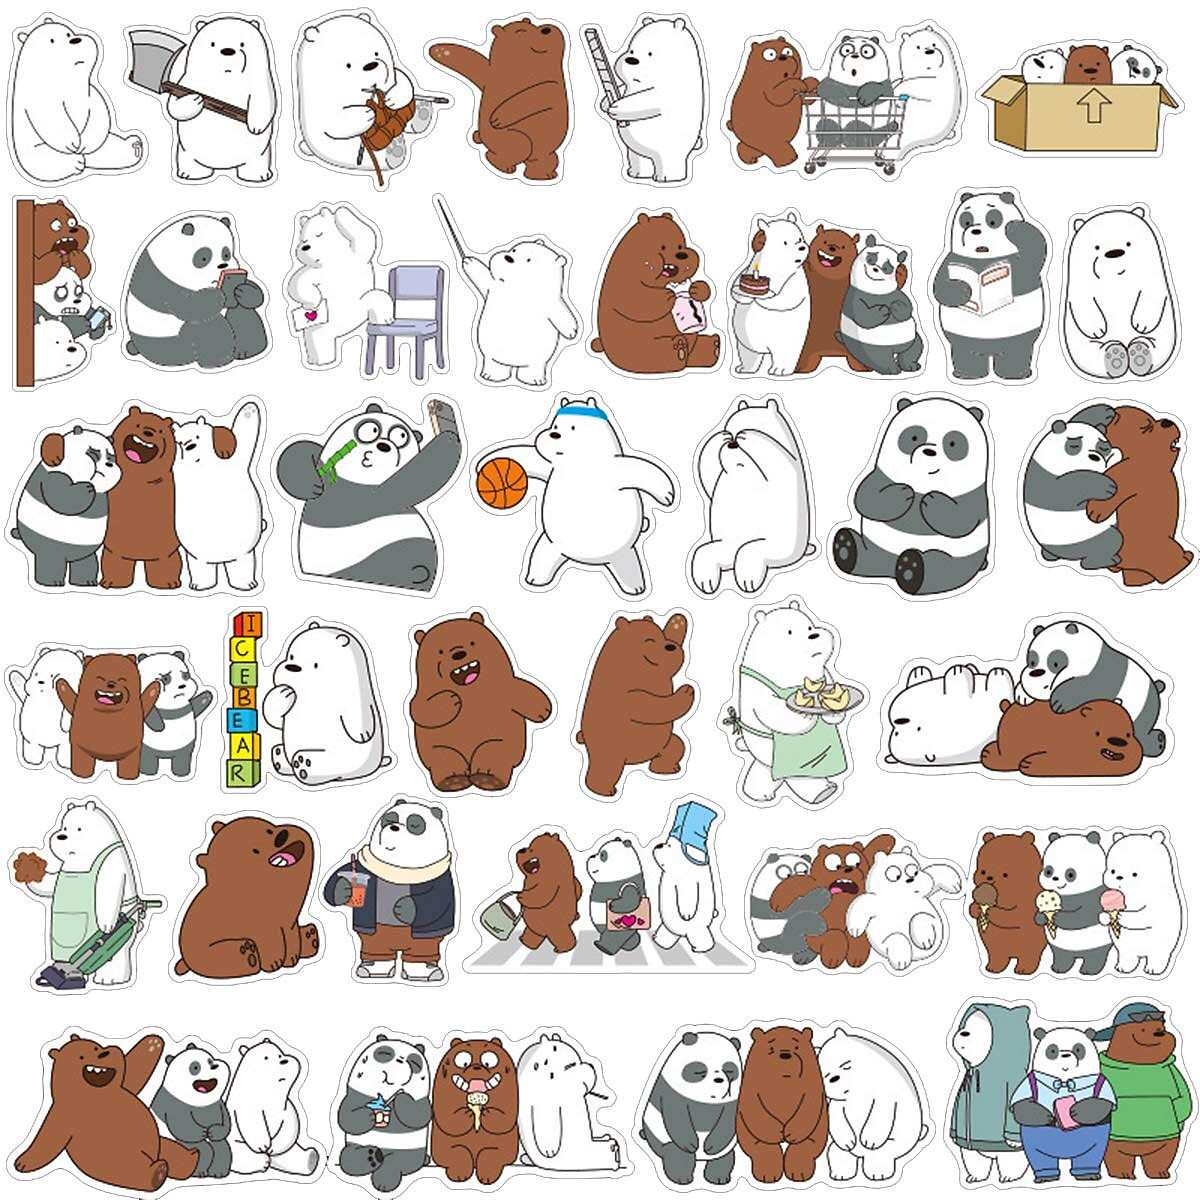 Với một set 60 sticker We Bare Bears dễ thương, bạn sẽ có thể tô điểm cho hình ảnh cá nhân của mình một cách độc đáo và vui nhộn. Chúng tôi đảm bảo những con gấu trong sticker sẽ làm bạn cười đến nghẹt thở!